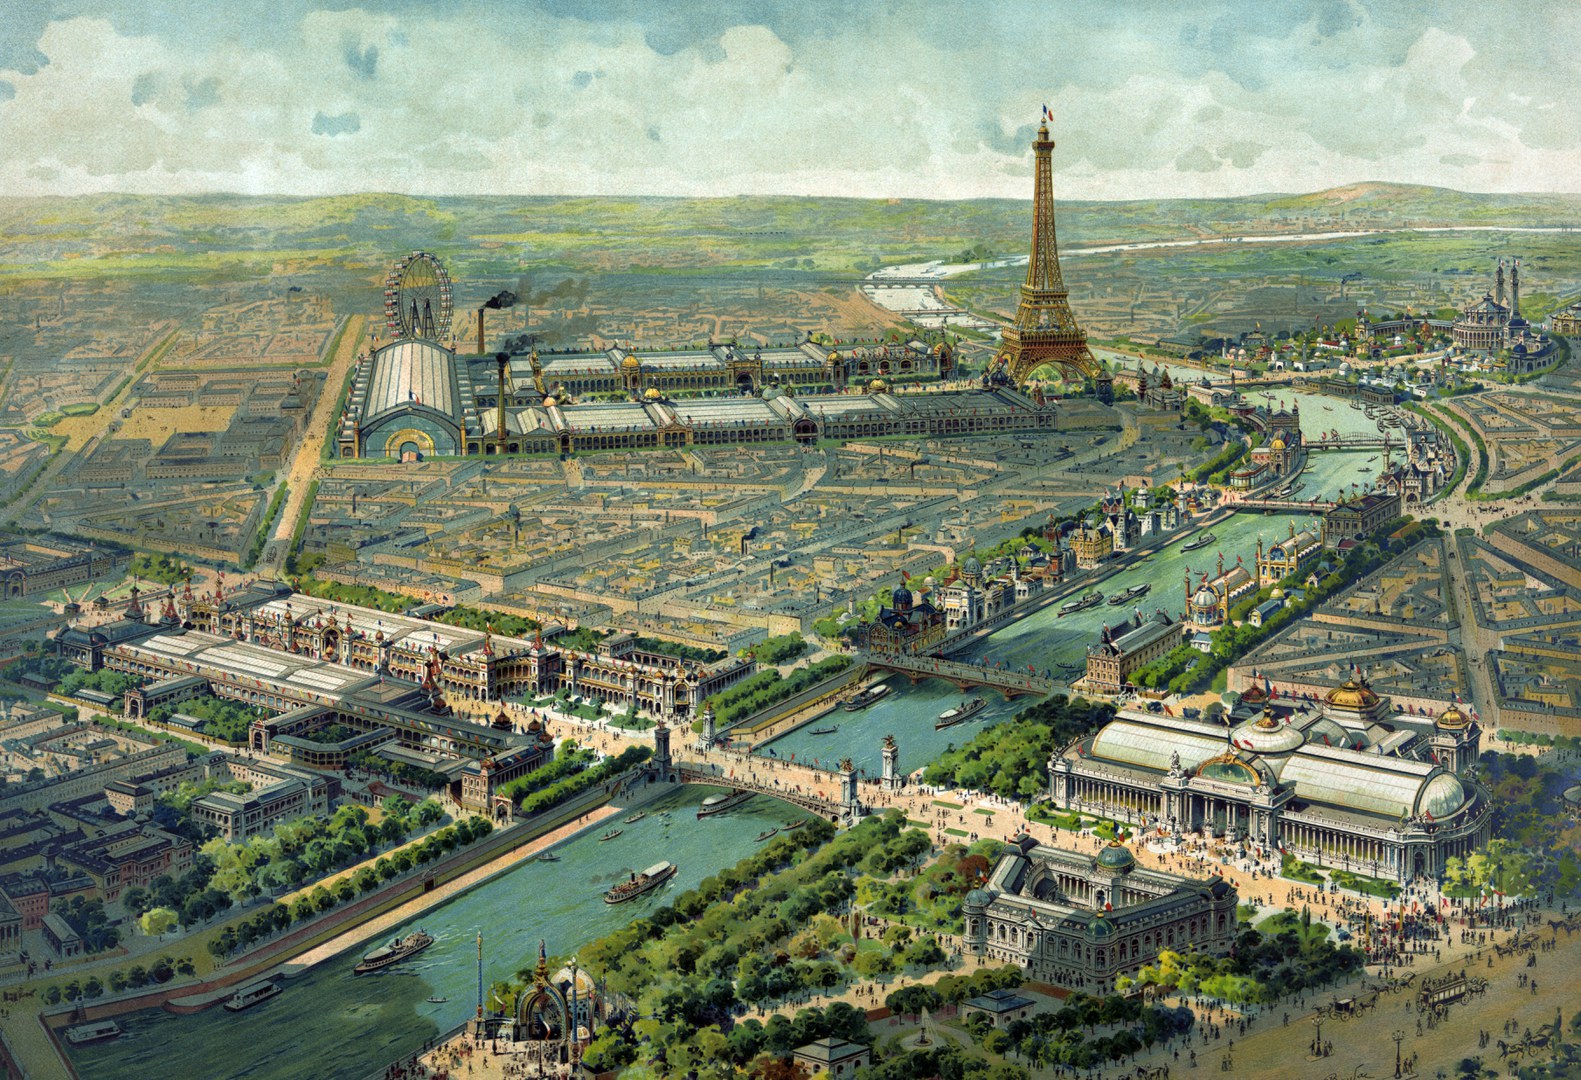 Vue panoramique de l'exposition universelle de 1900